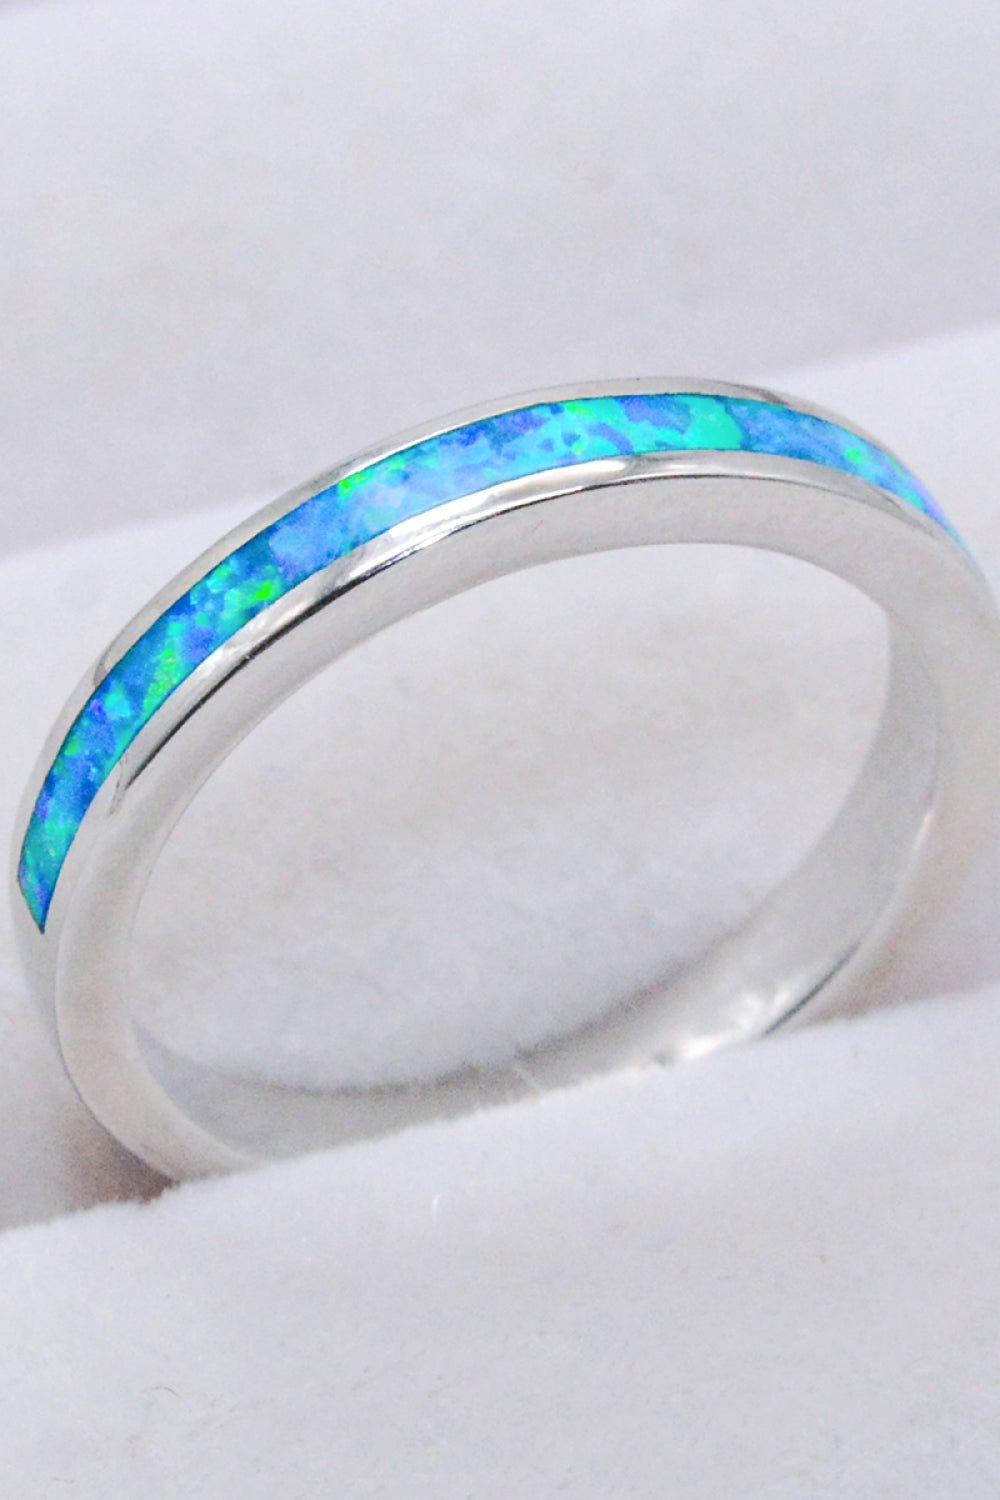 Blue Opal Banded Ring - Tangerine Goddess